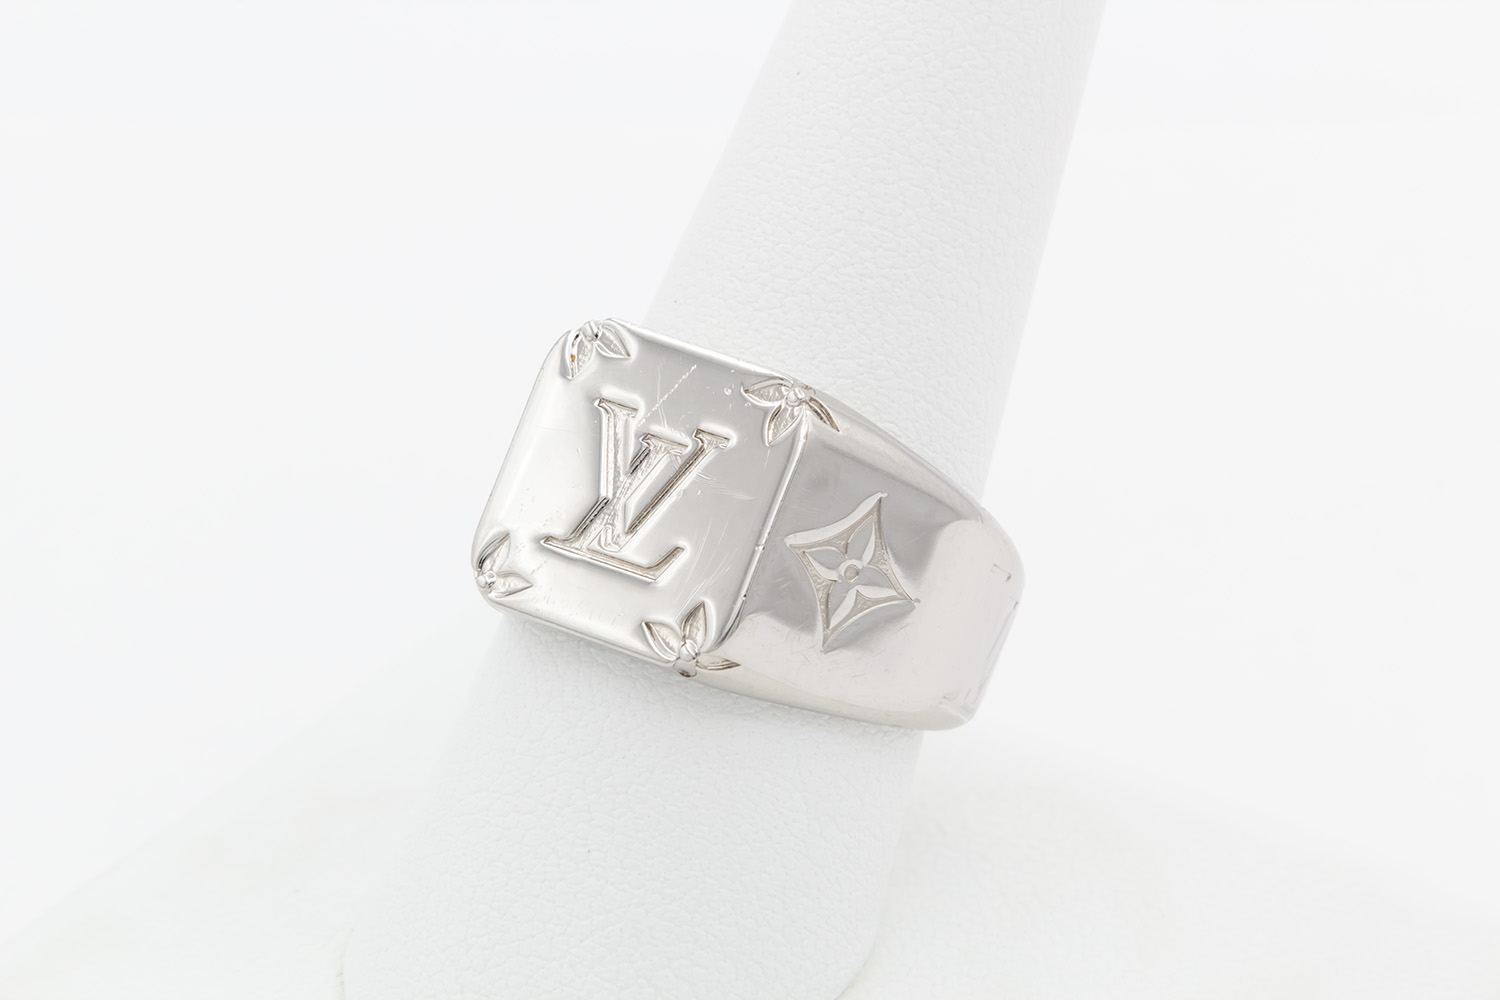 Louis Vuitton Signet Ring M62487 Men's M Size No. 19 Silver Color Mono